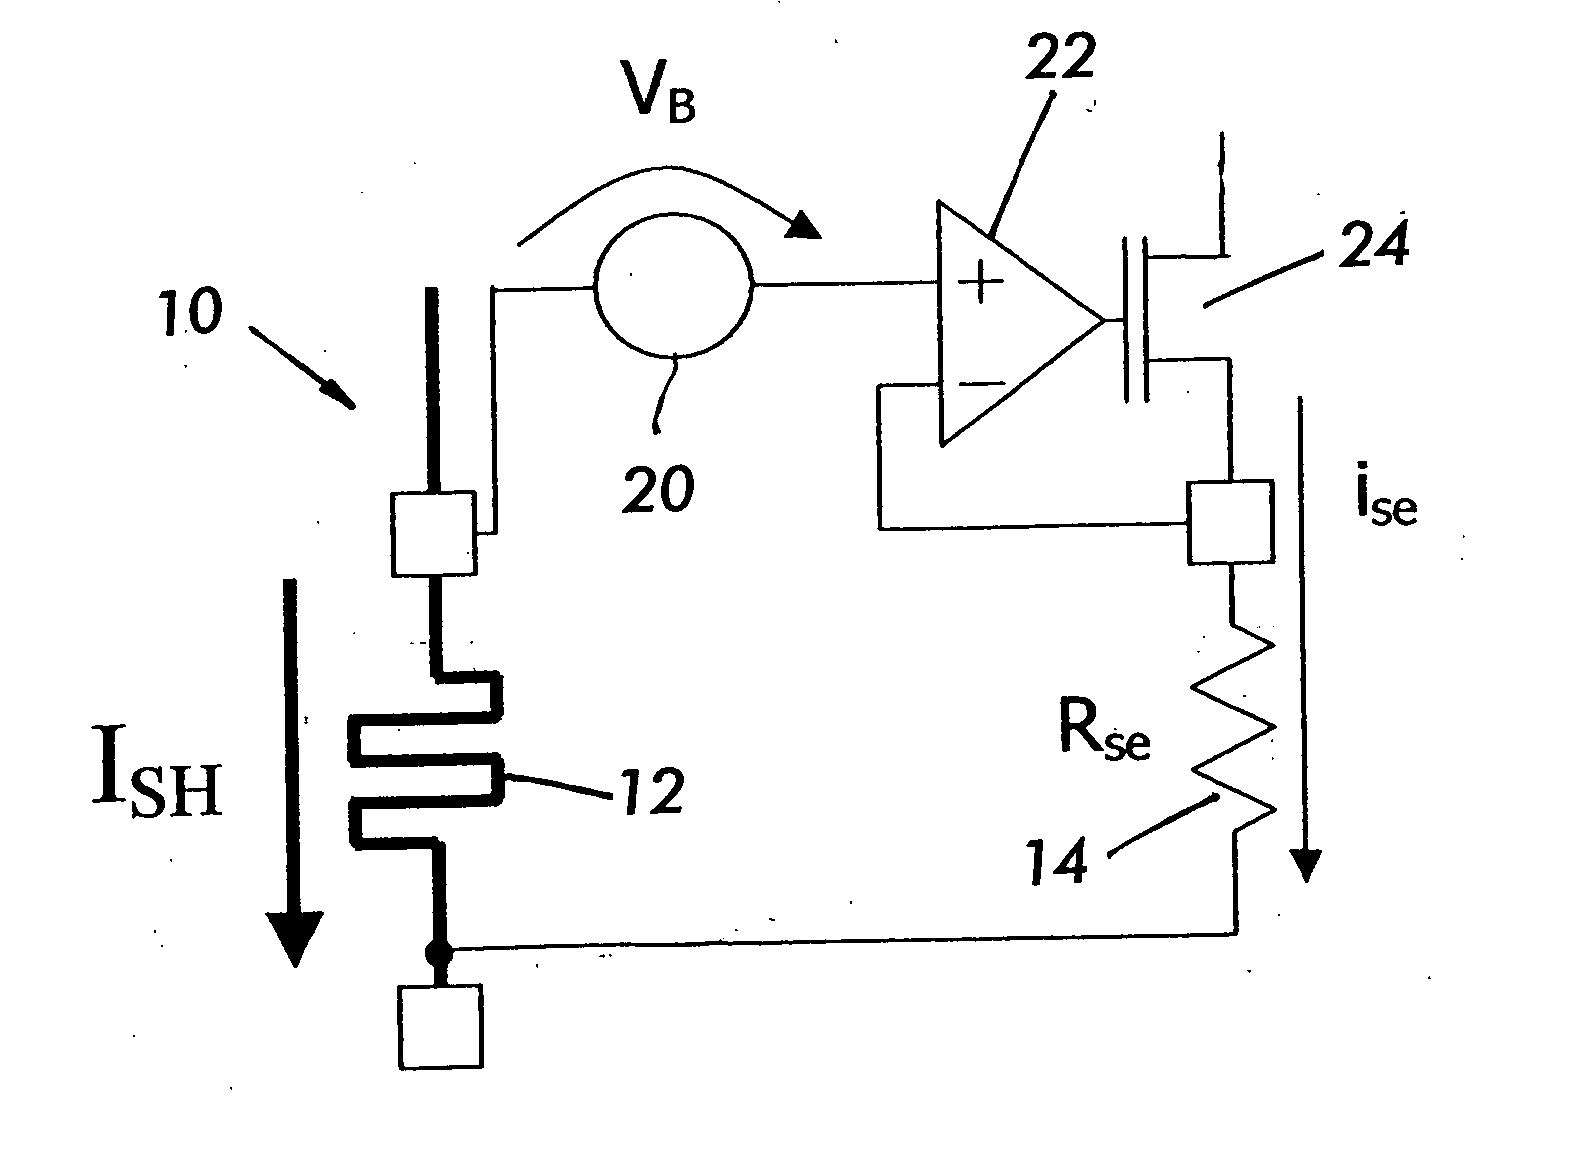 Current sense shunt resistor circuit